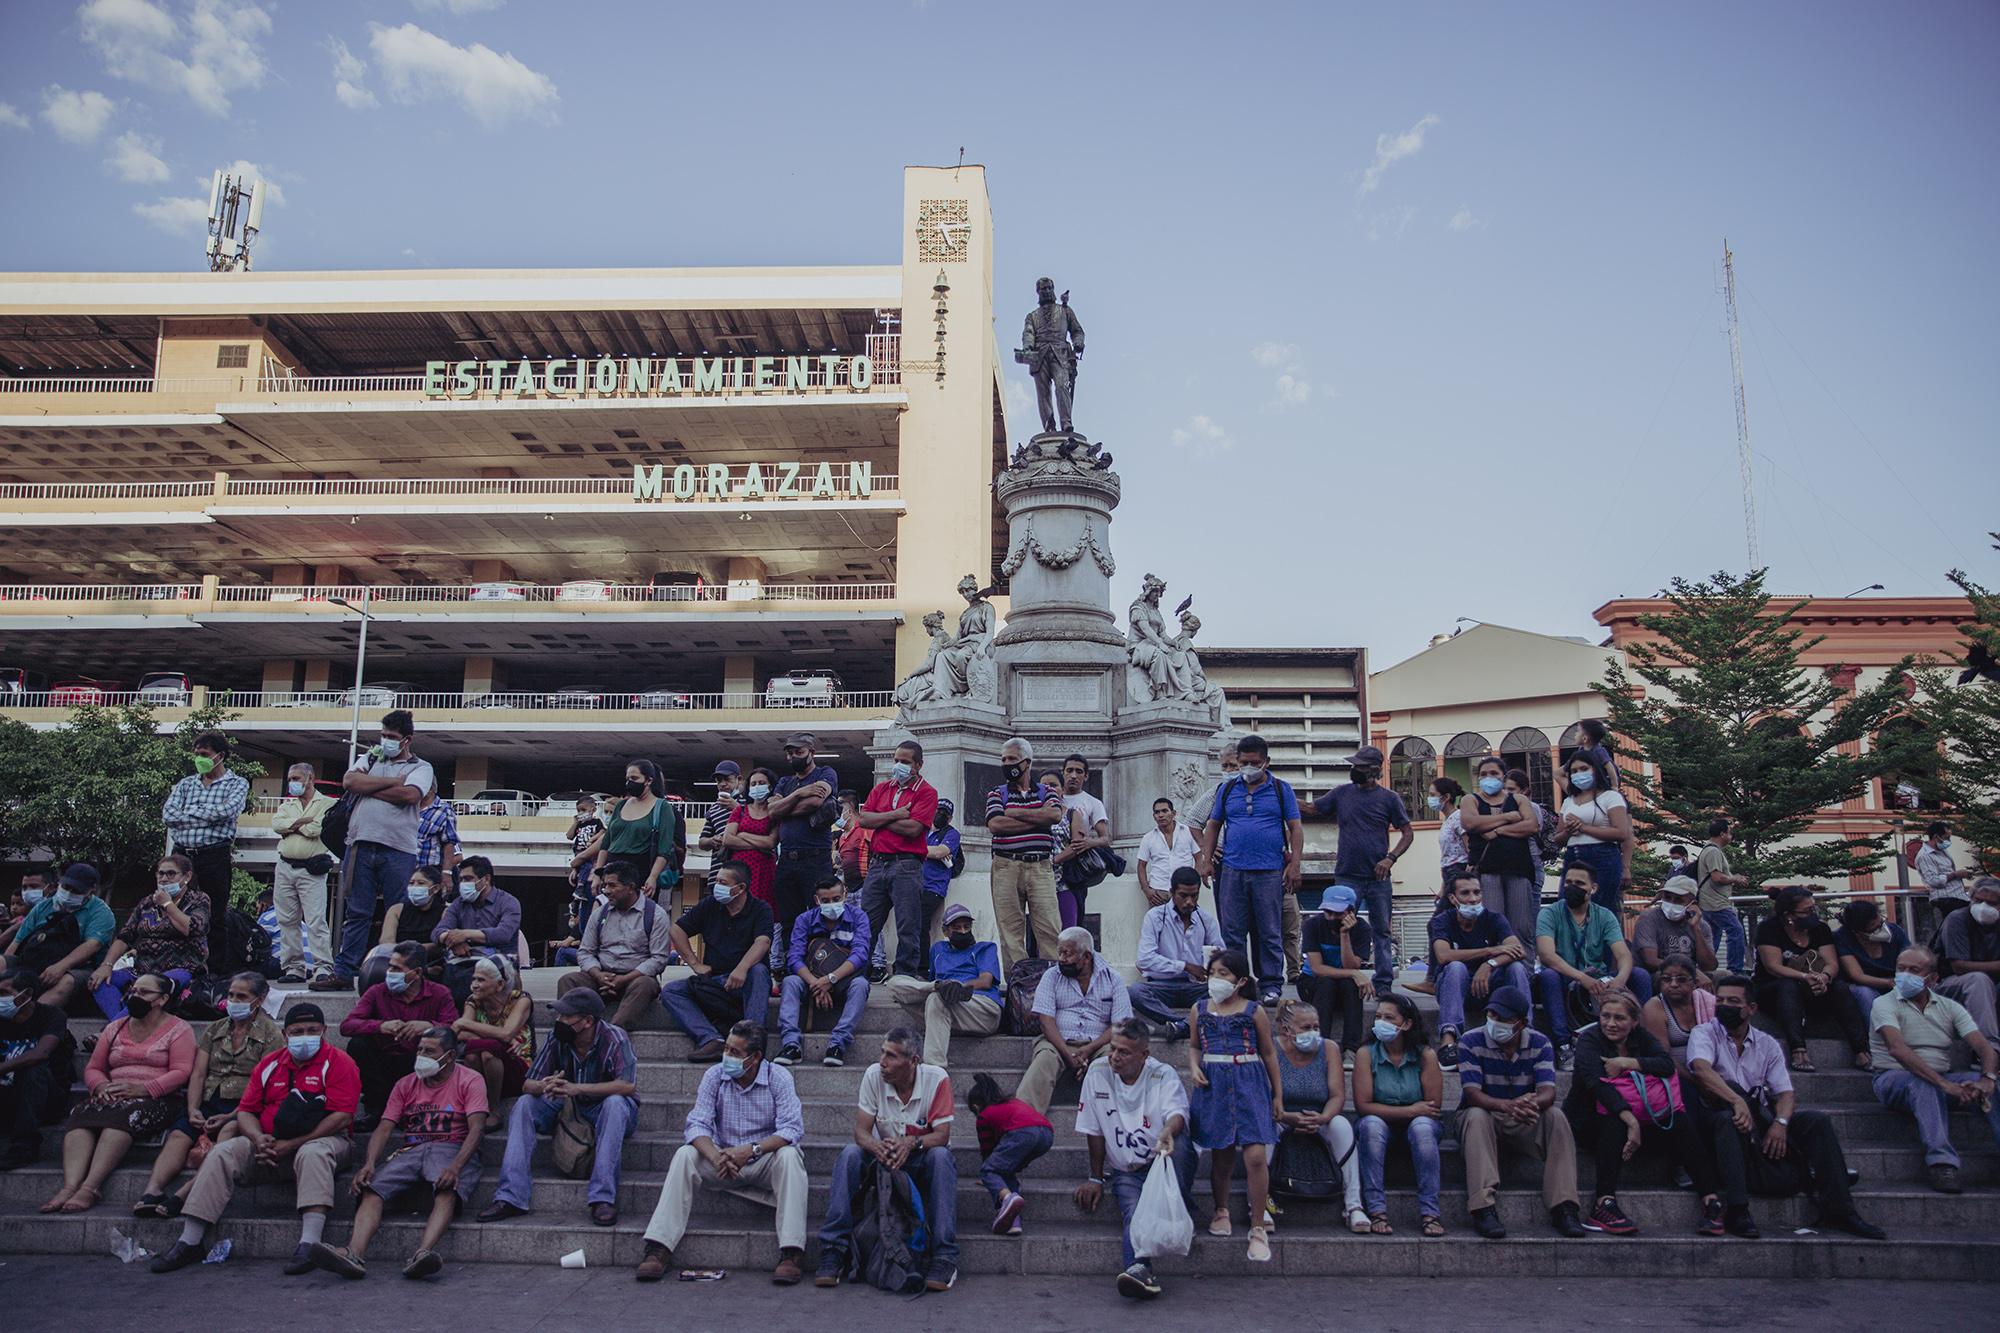 Decenas de personas se acumularon en el centro de la plaza Morazán para poder escuchar música de un artista callejero. Foto de El Faro: Carlos Barrera